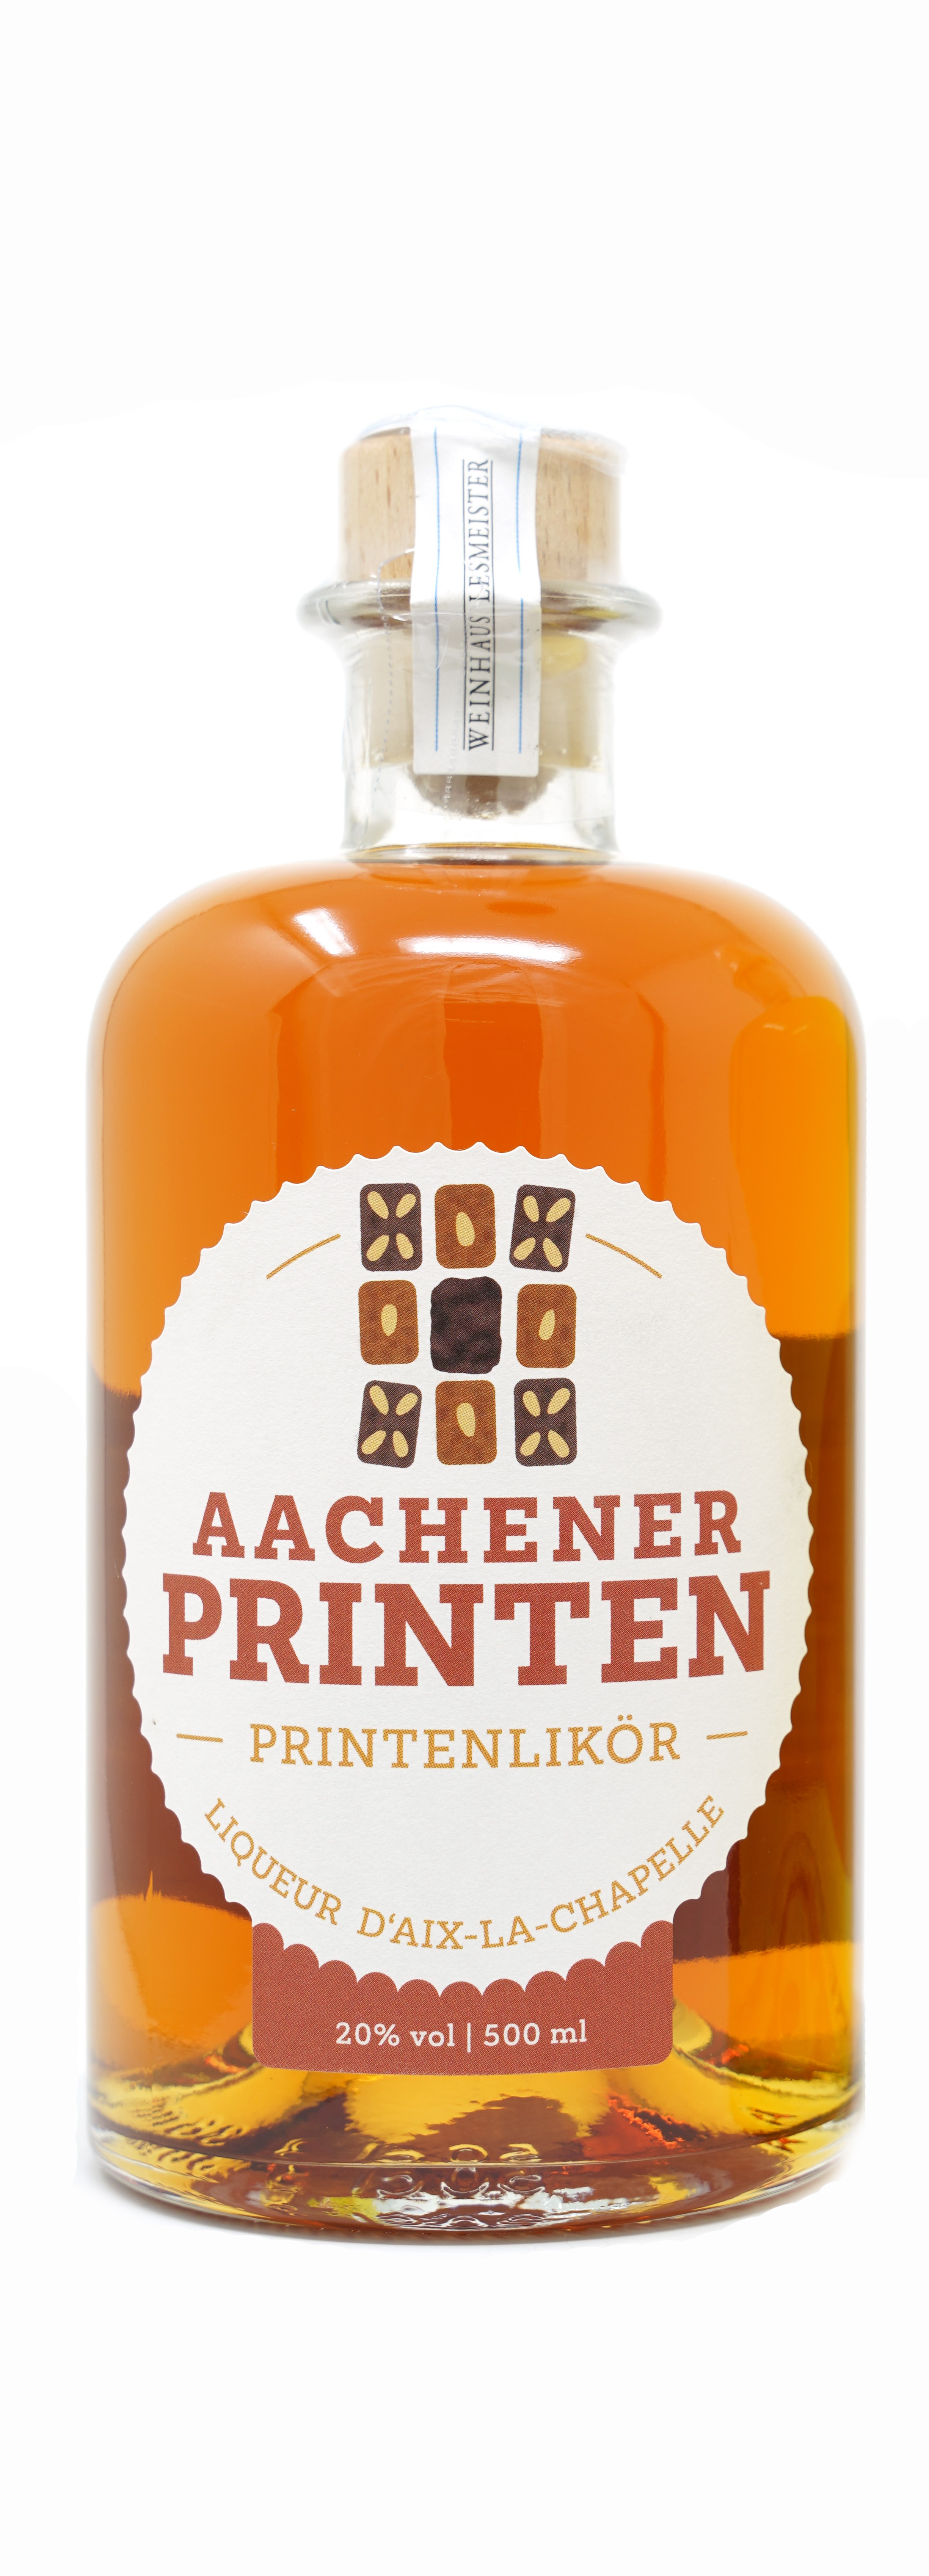 Aachener Printenlikör